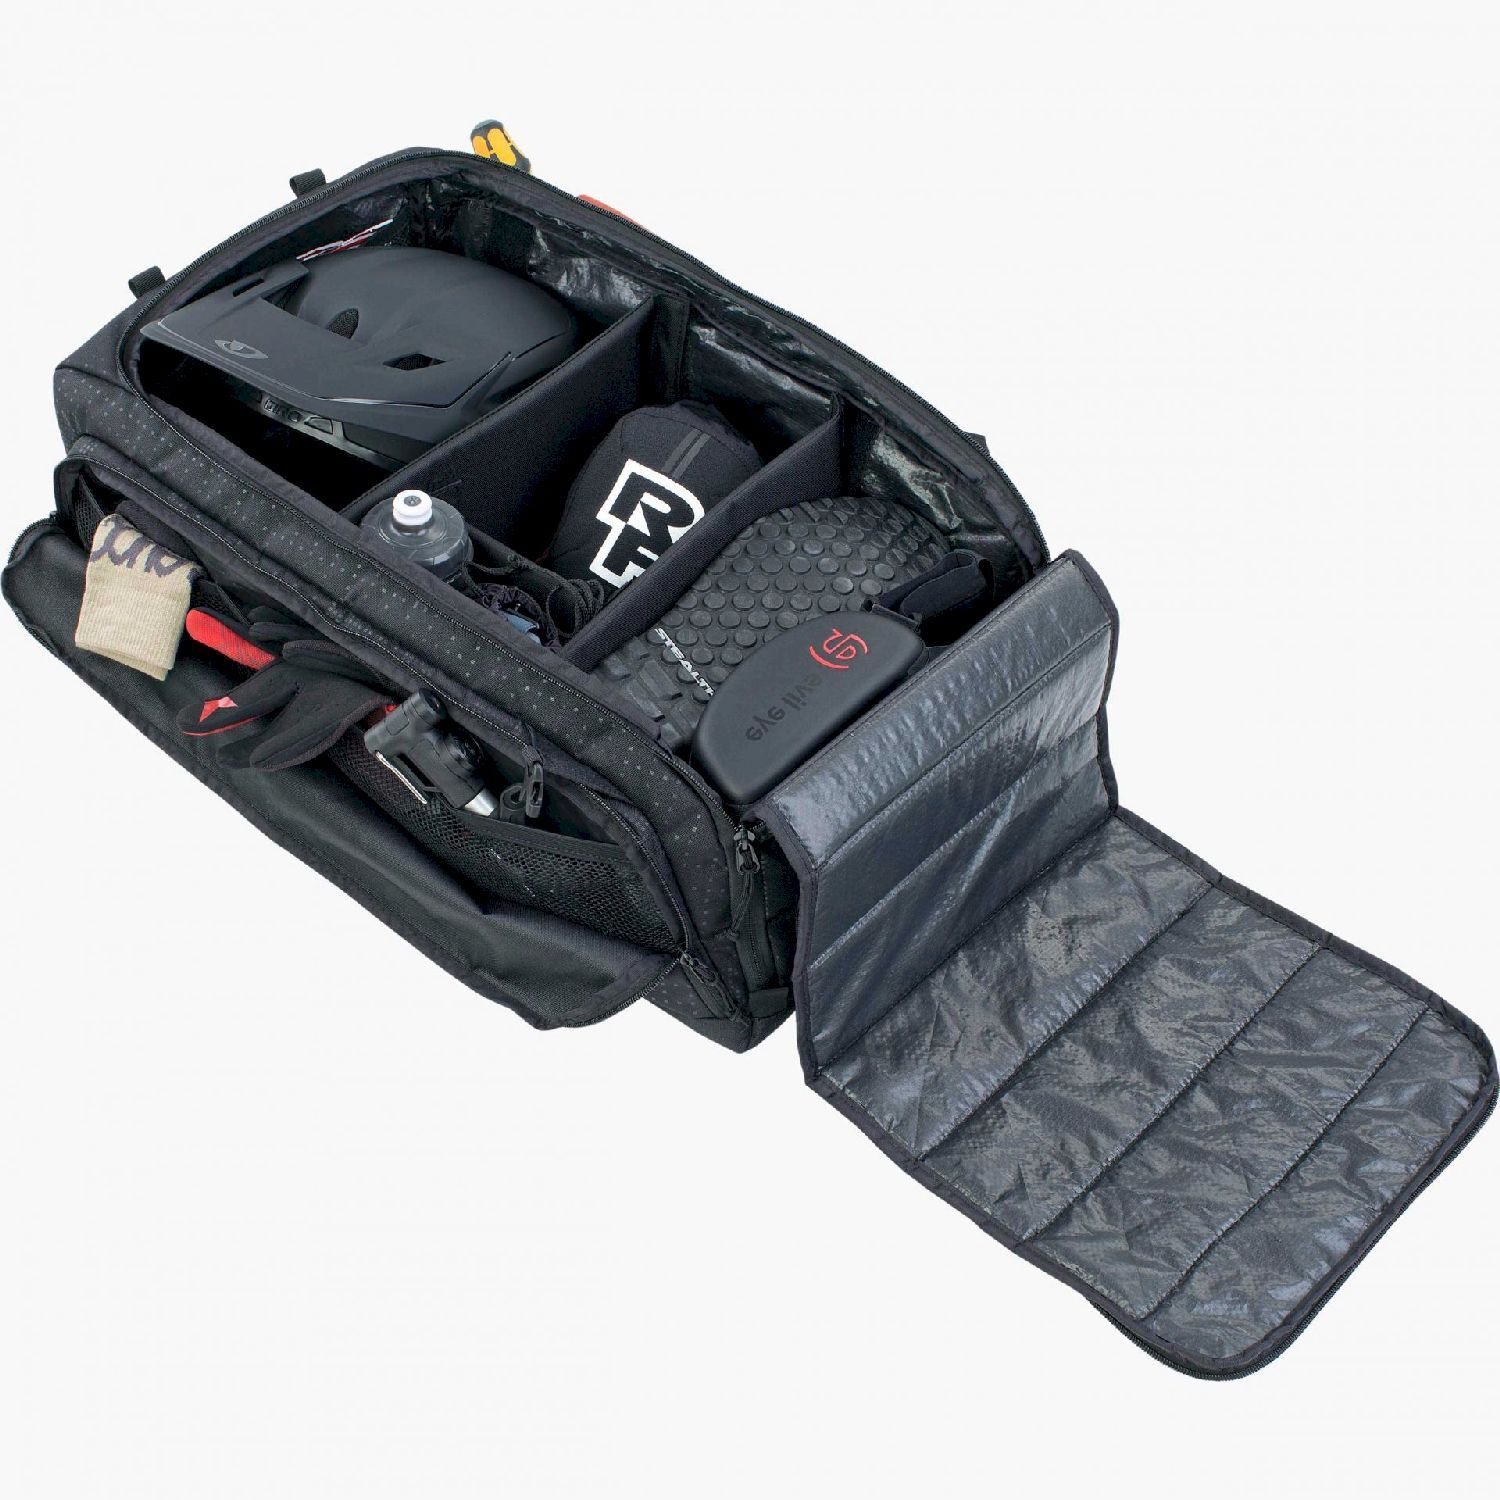 Evoc Gear Bag 55 - Travel backpack